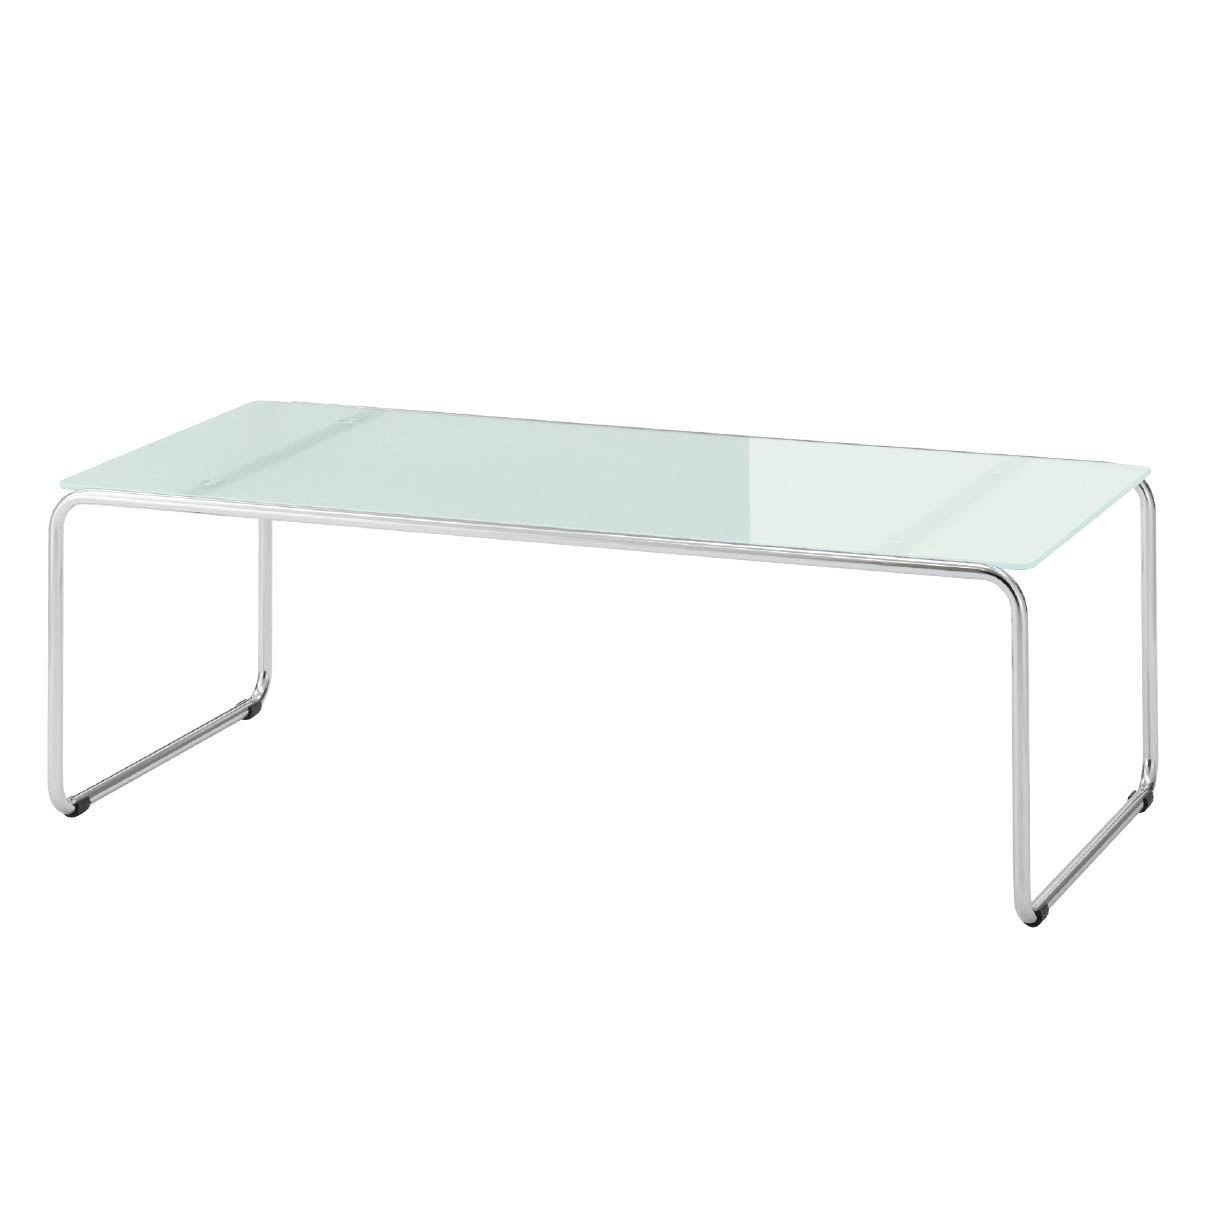 新品■卓上ディスプレイミニテーブル小40cm幅ブラックスチール脚ガラス天板業務用